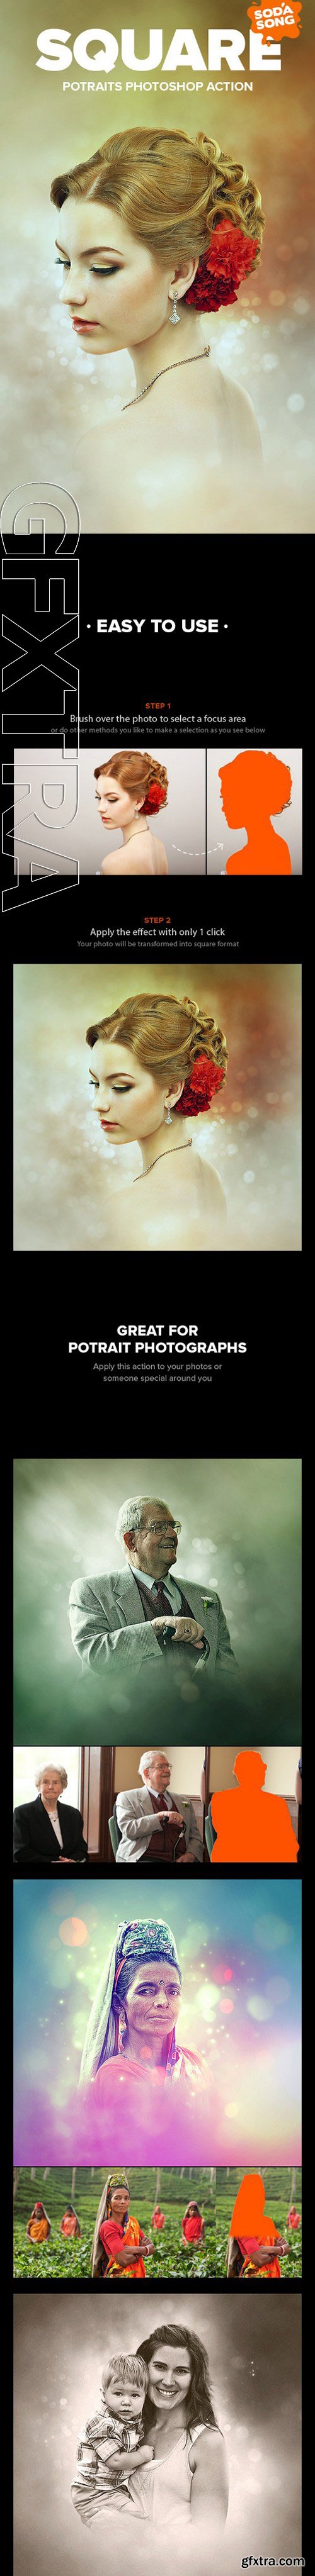 Graphicriver - Square Potraits Photoshop Action 11458502